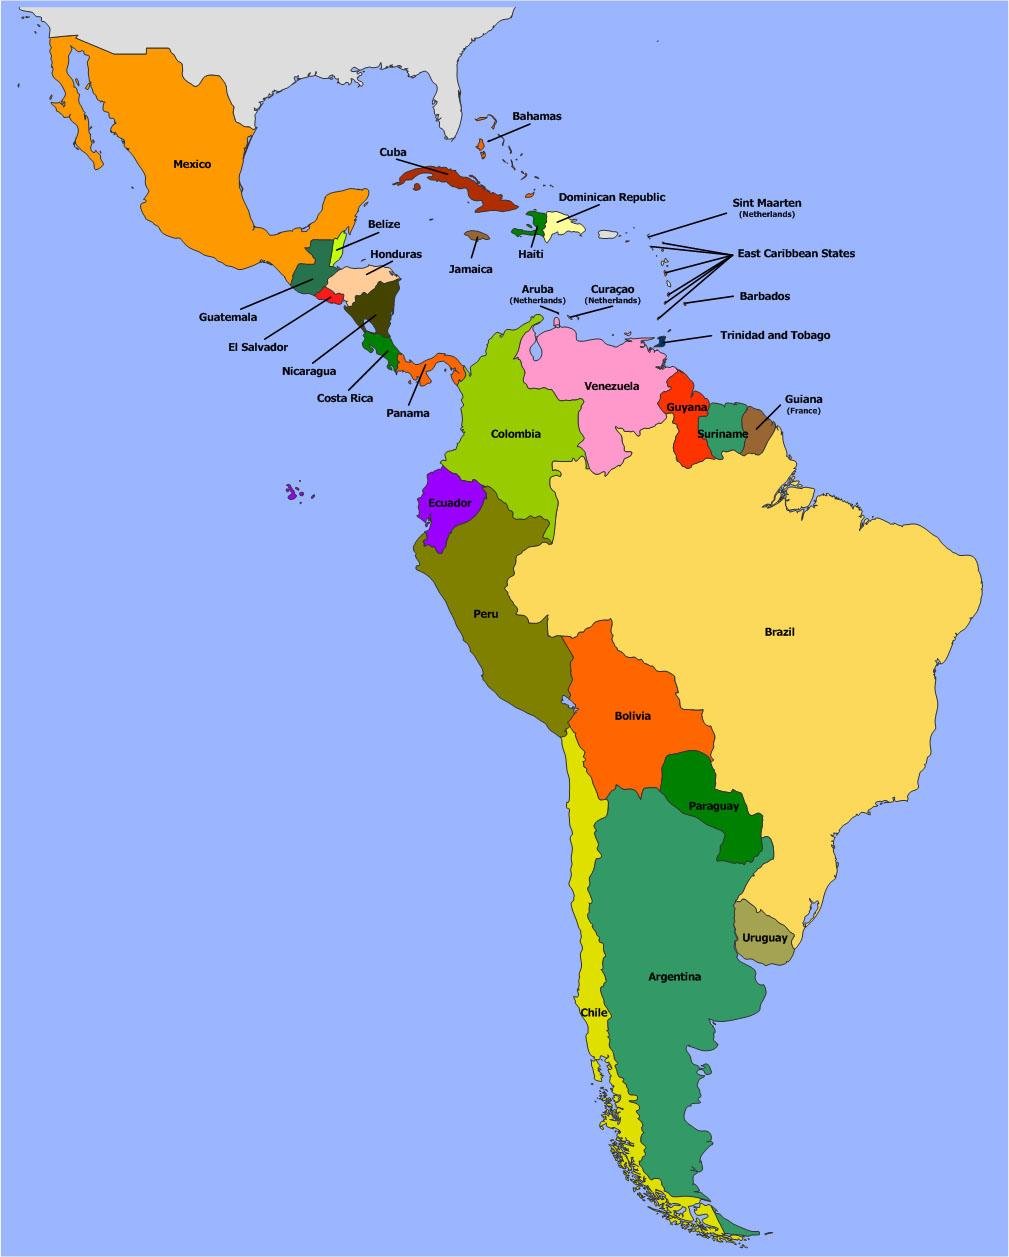 Политическая карта Латинской Америки со странами. Латинская Америка политическая карта на русском. Карта Южной и Латинской Америки. Политическая карта литанкий Америки.